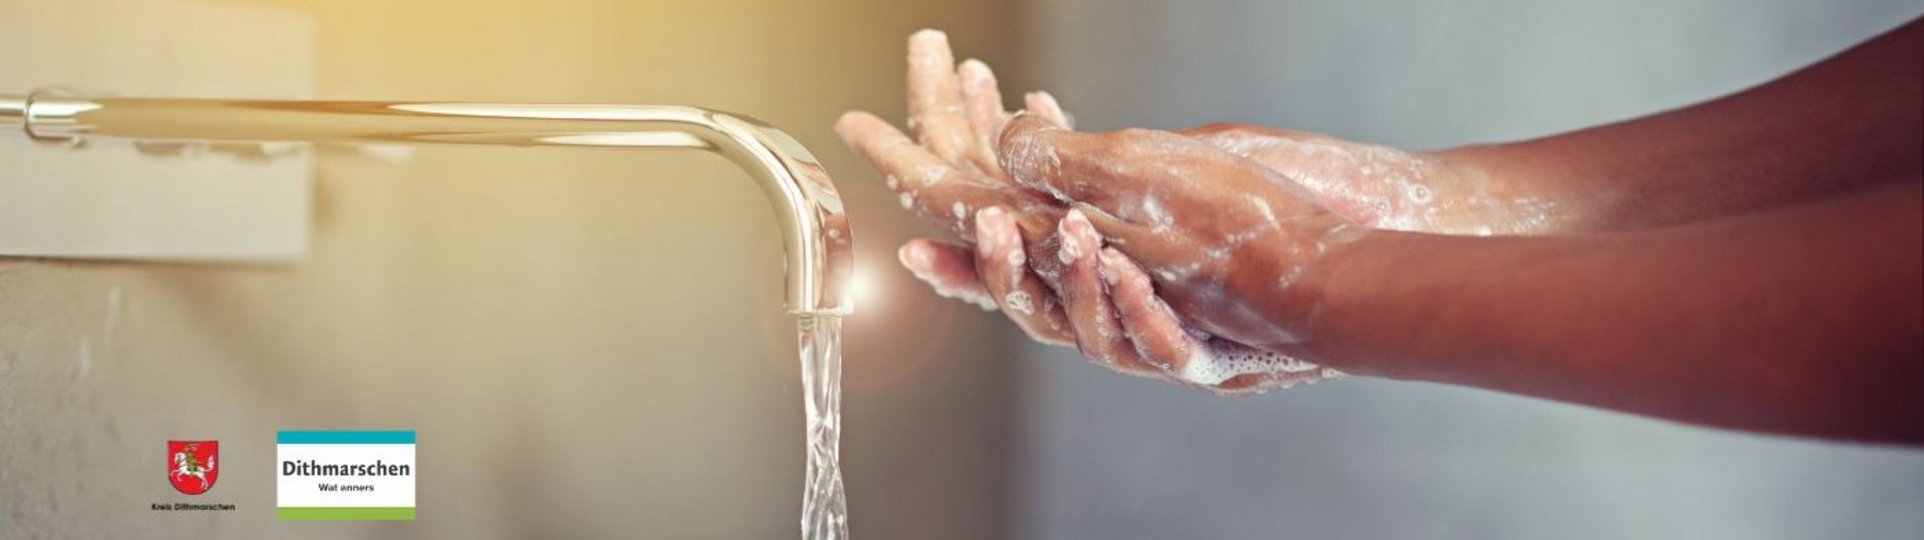 Das Bild zeigt Hände, die am Wasserhahn gewaschen werden.